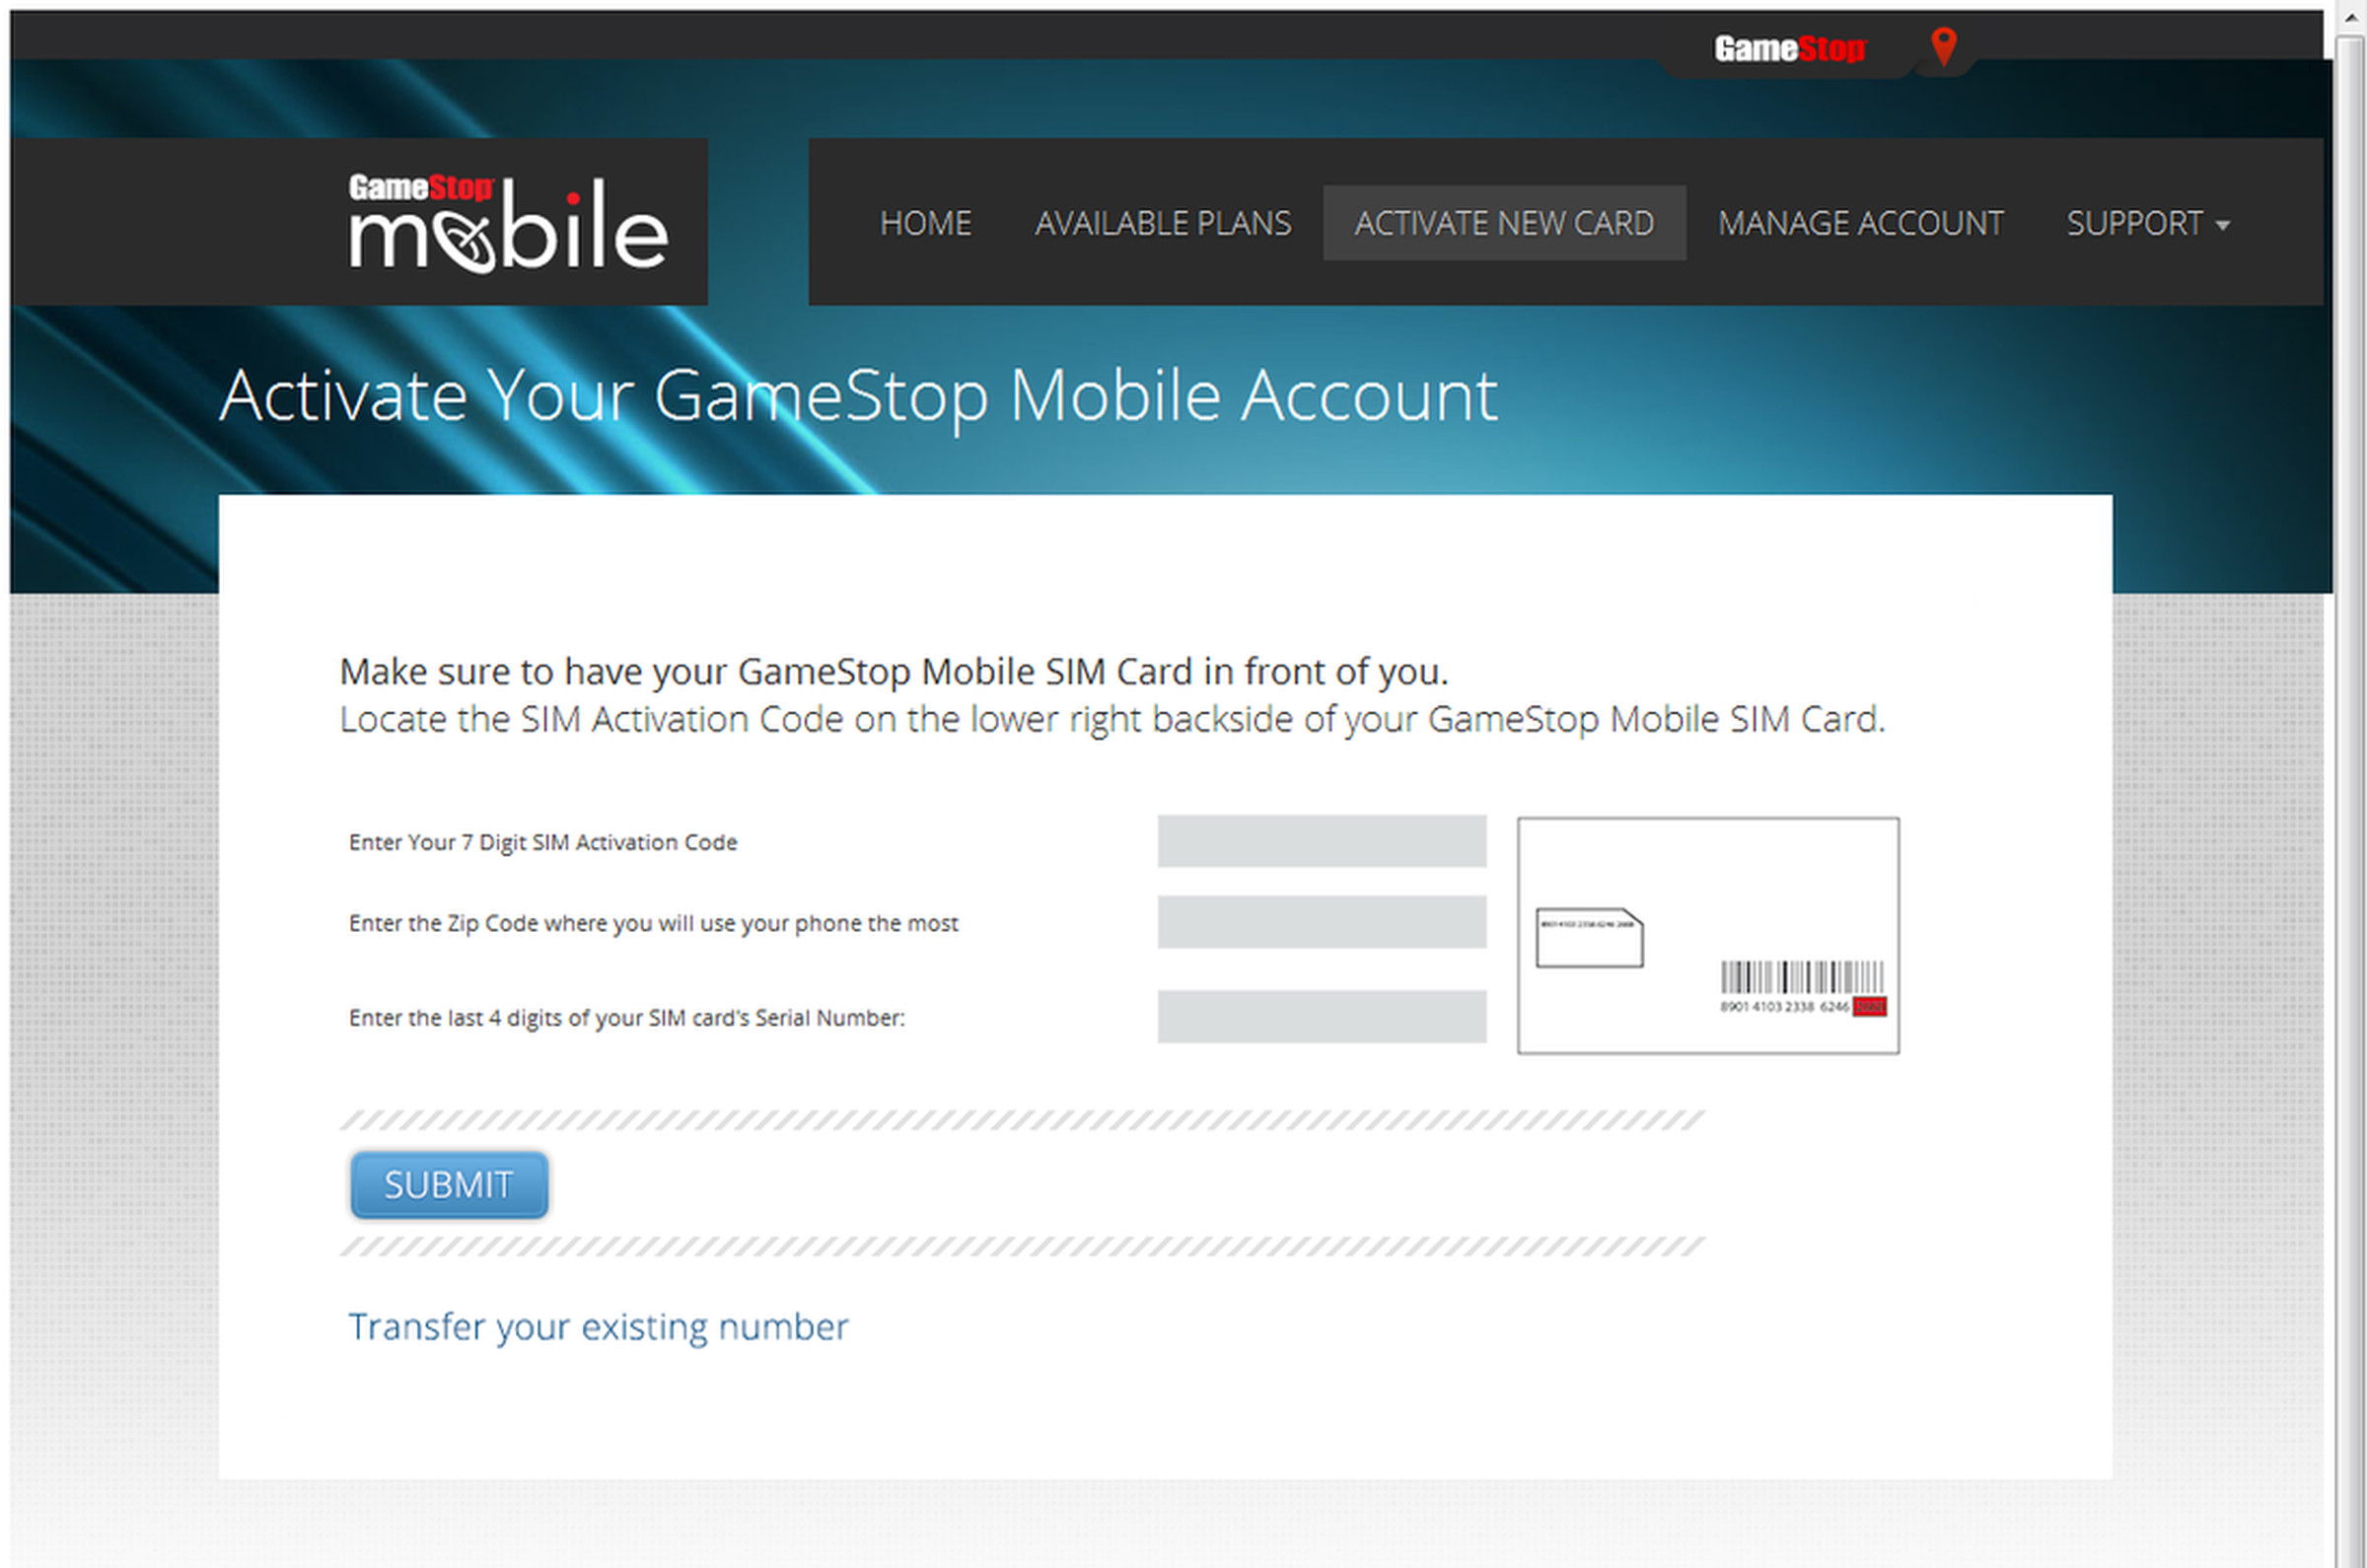 GameStop Mobile screencaps